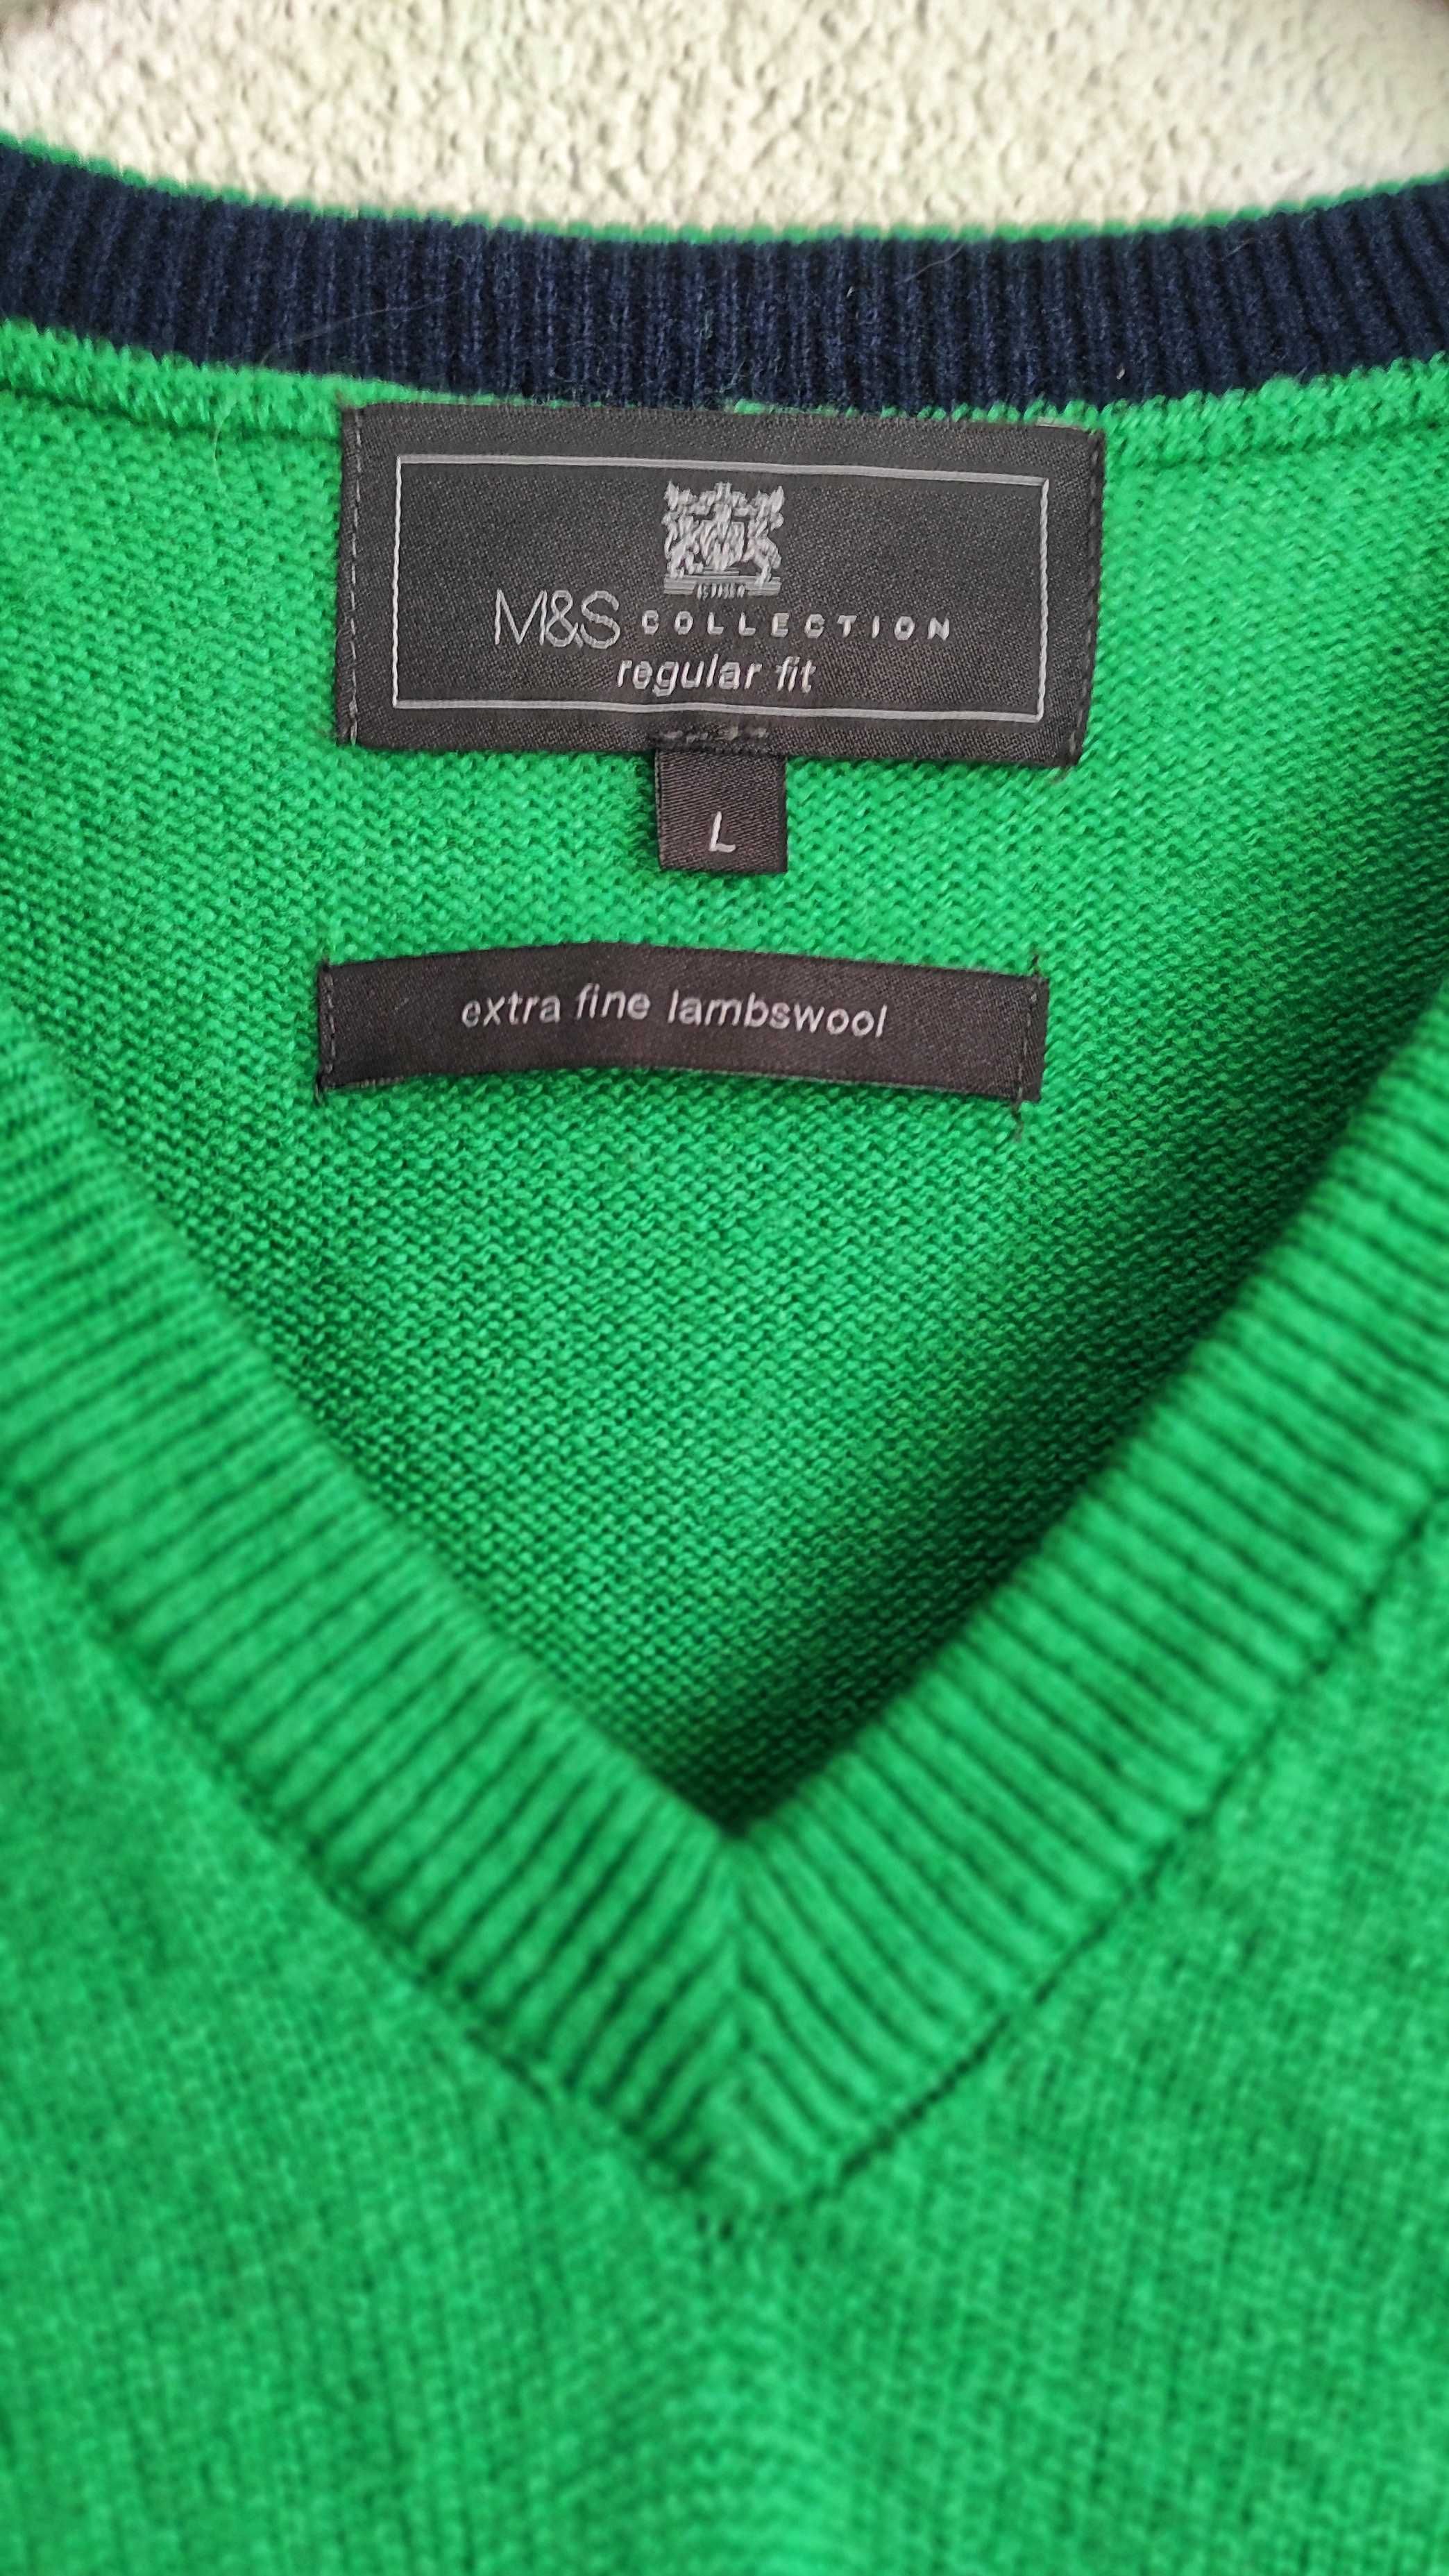 Soczyście zielony sweterekV-neck z extrafine lambswool wełna